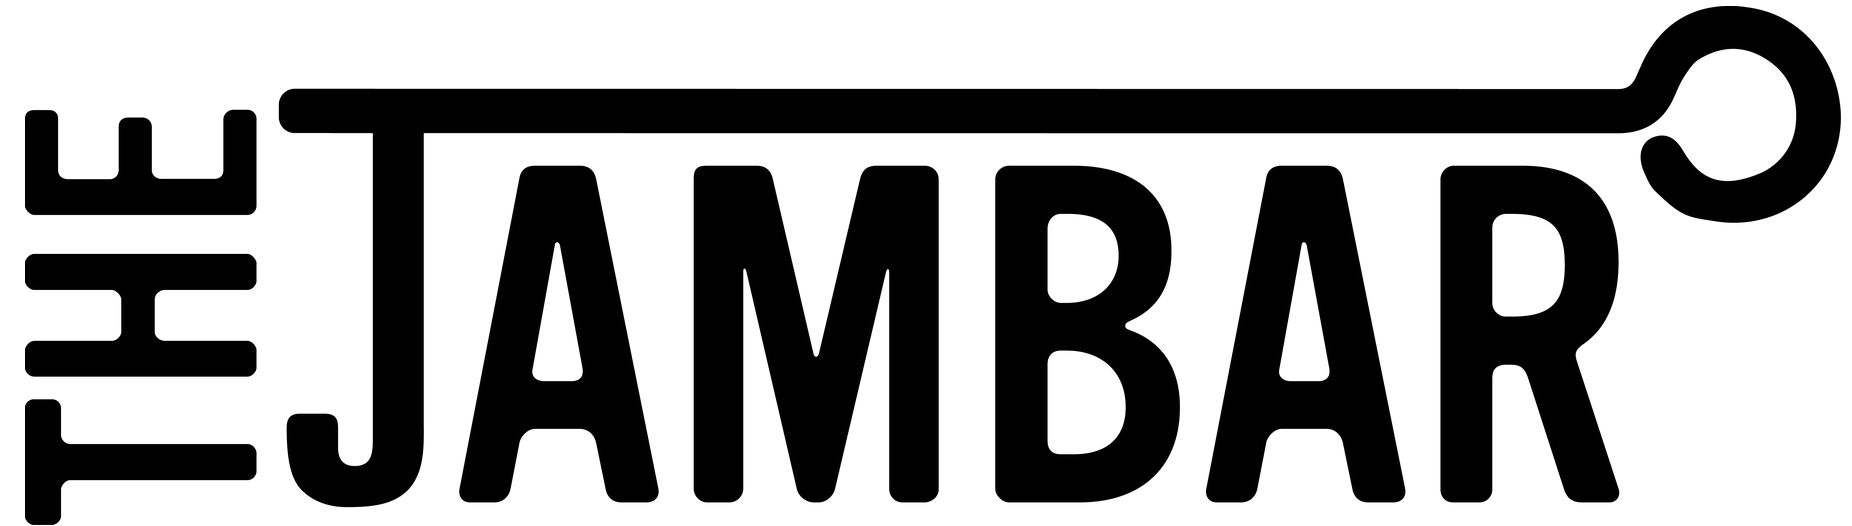 the jambar logo